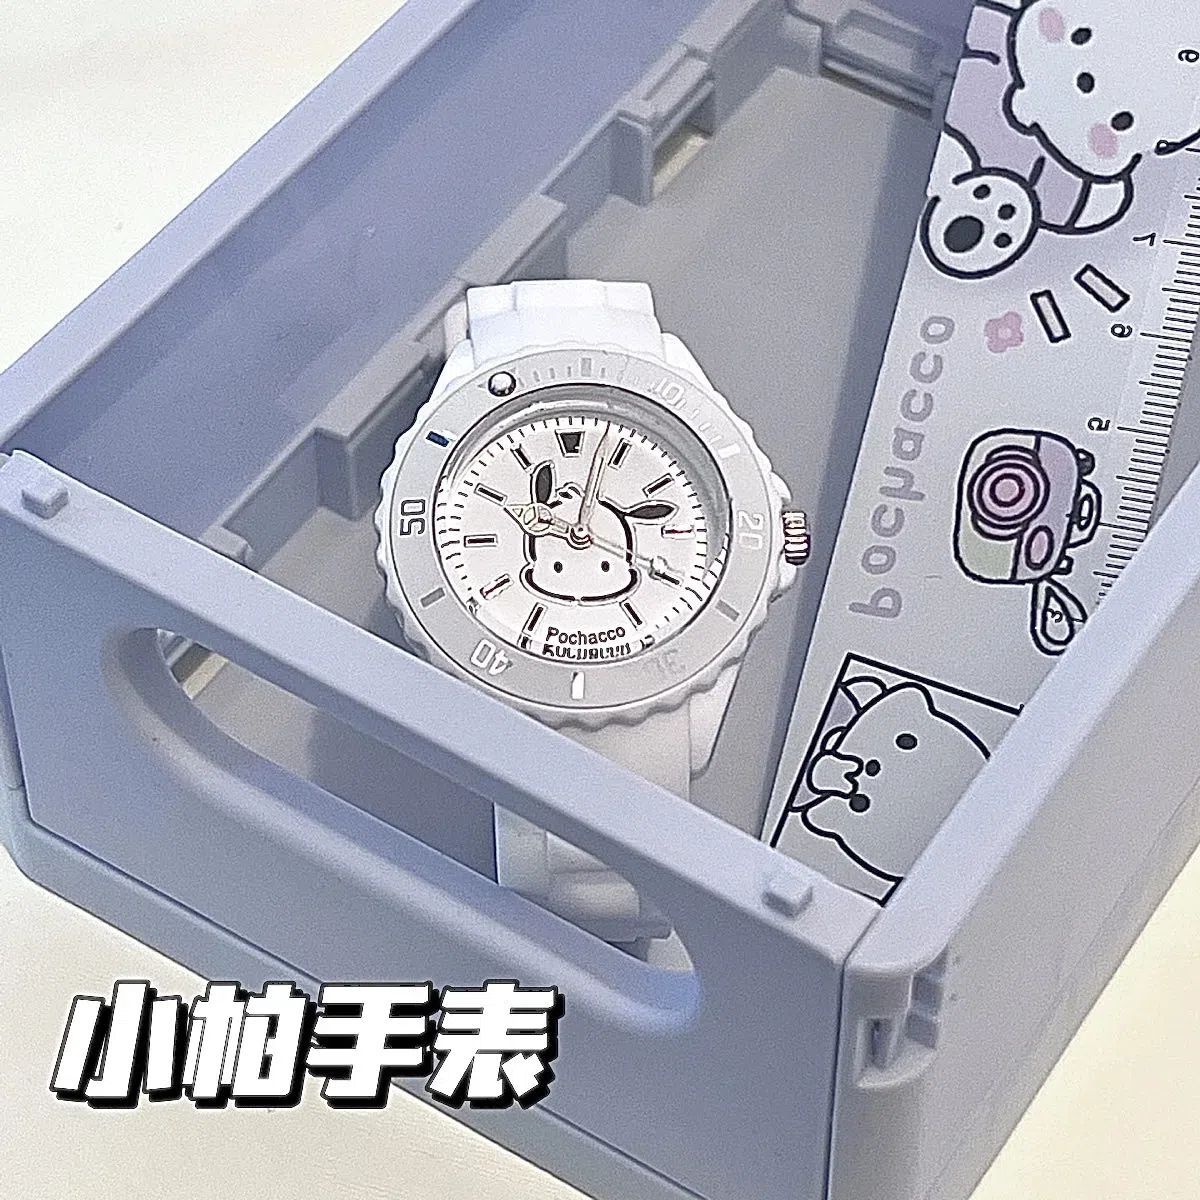 原创设计可爱帕恰狗手表儿童小帕卡通手表高级感手表闺蜜生日礼物